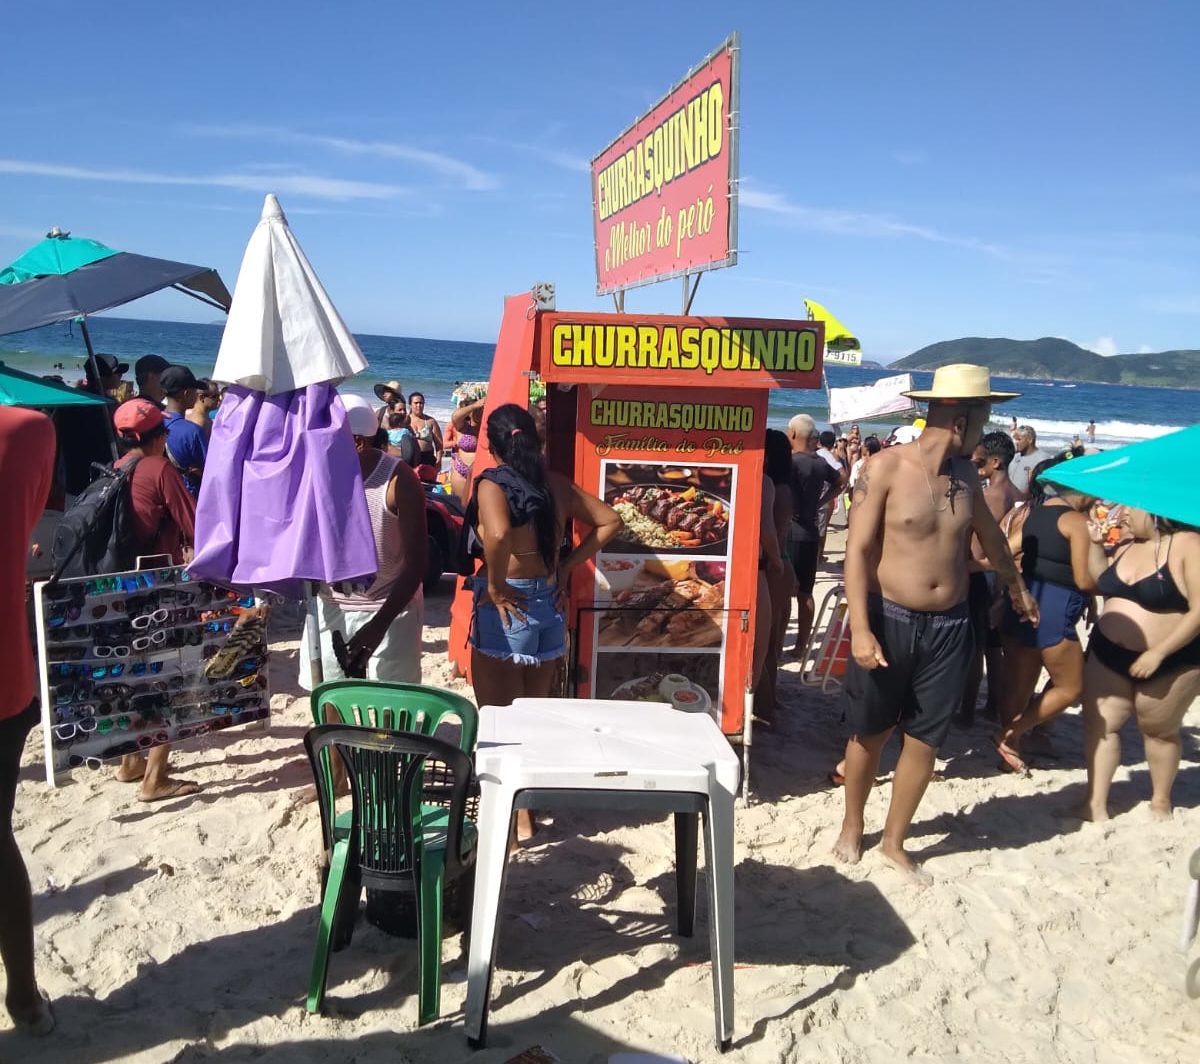 Carrinho de churrasco foi retirado da praia após ambulante ser esfaqueada.